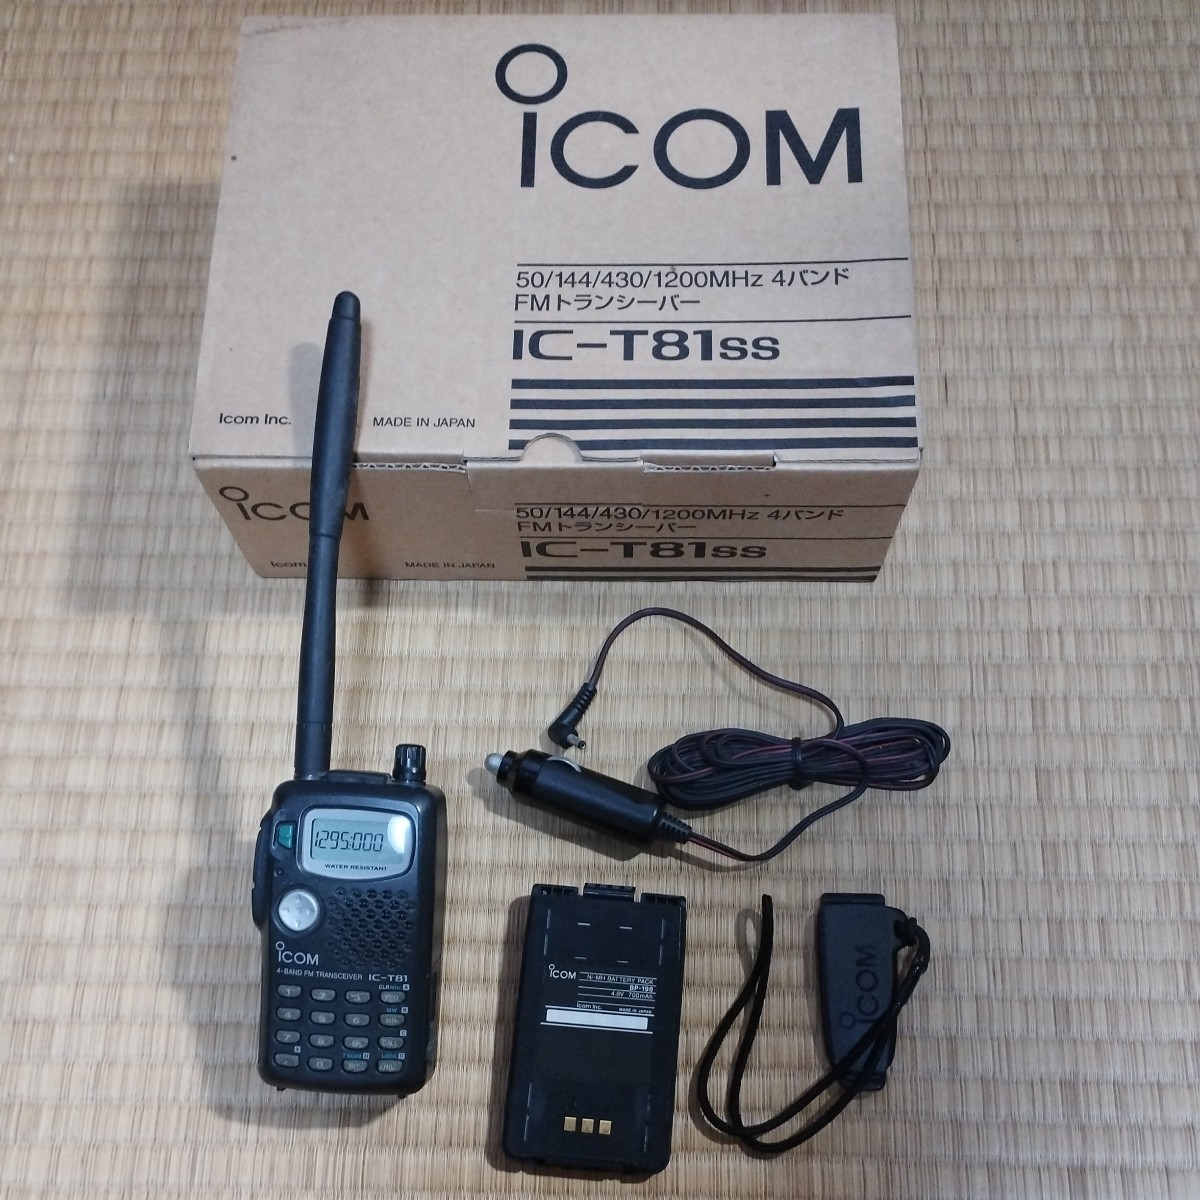 ICOM IC−T81 50/144/430/1200Mhz 4バンド FMトランシーバー アイコム 